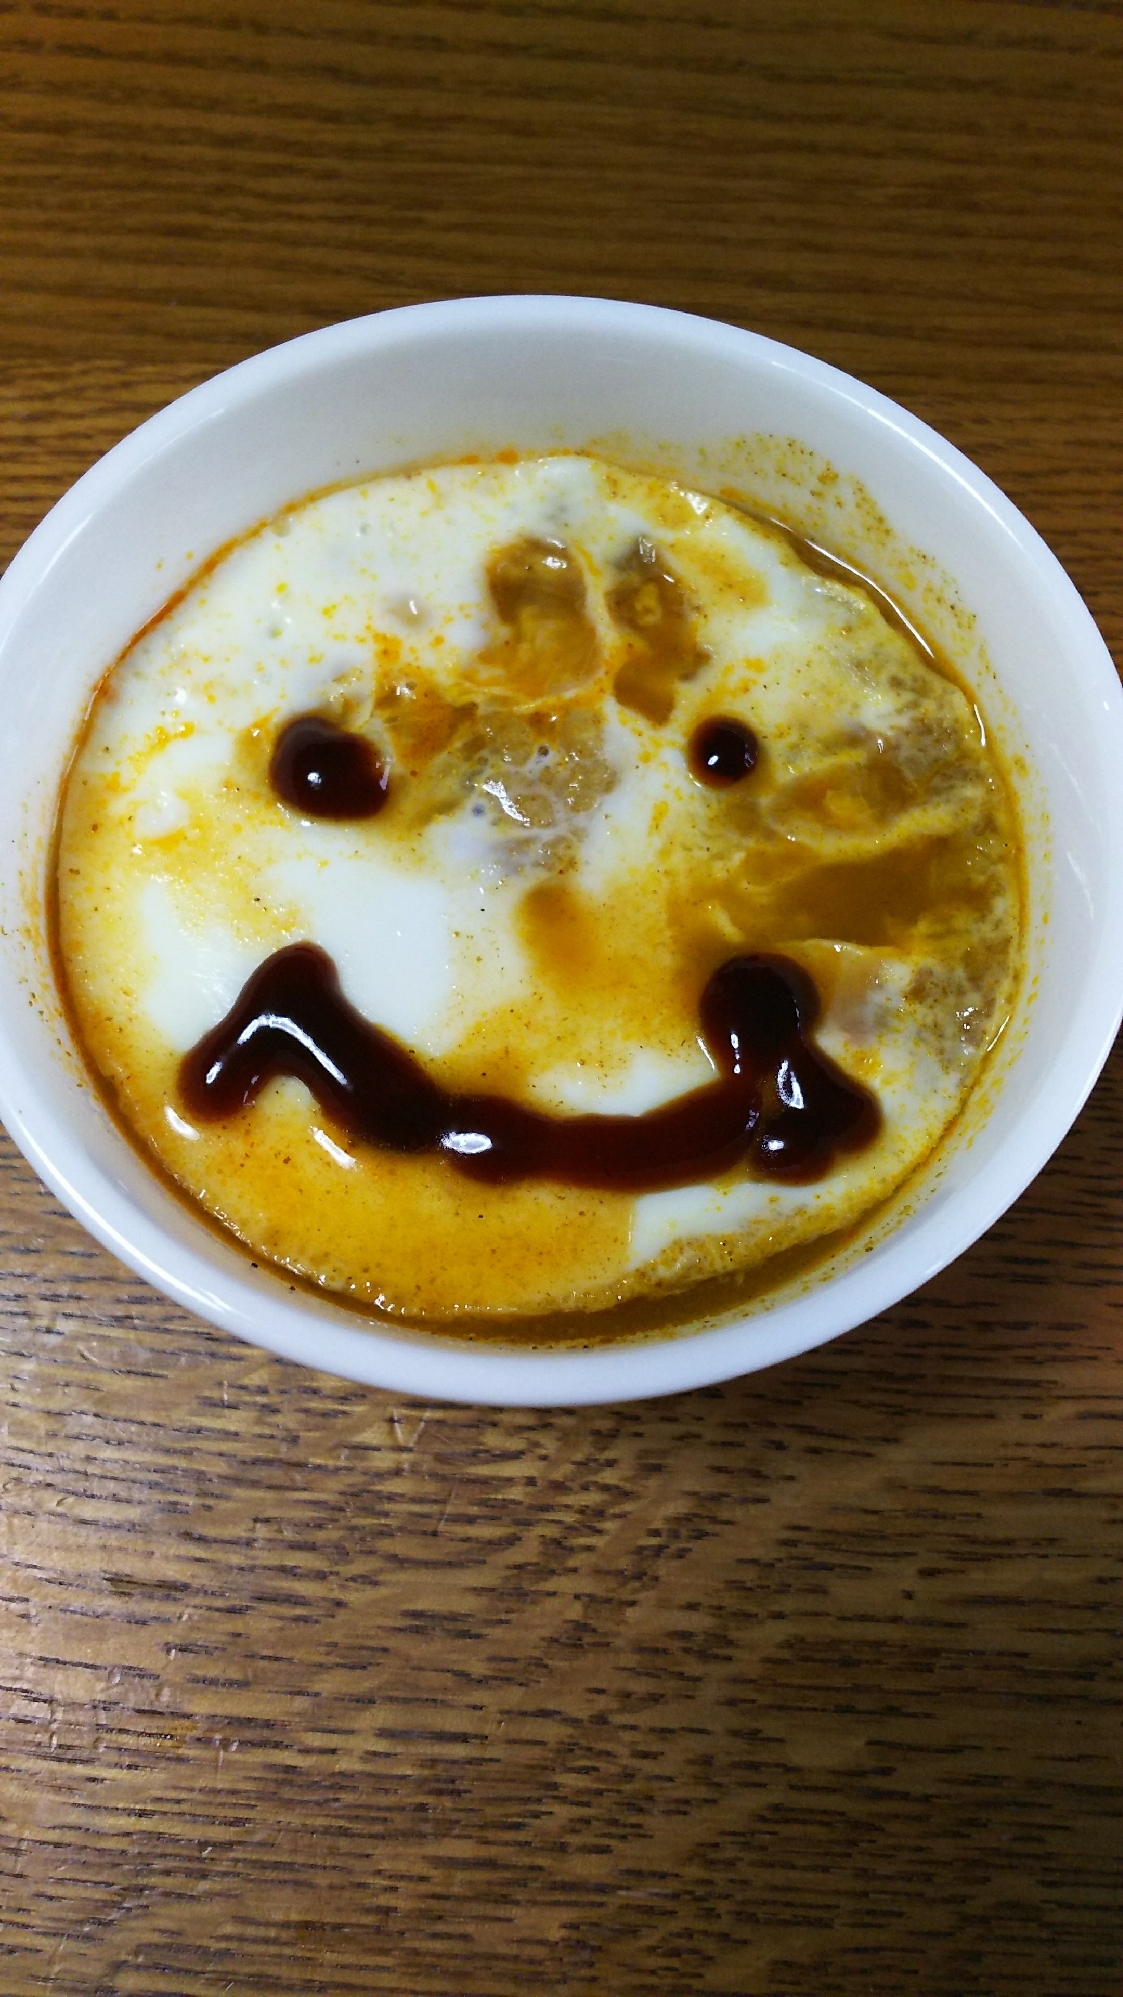 残ったカレー&ご飯&卵白(o^O^o)